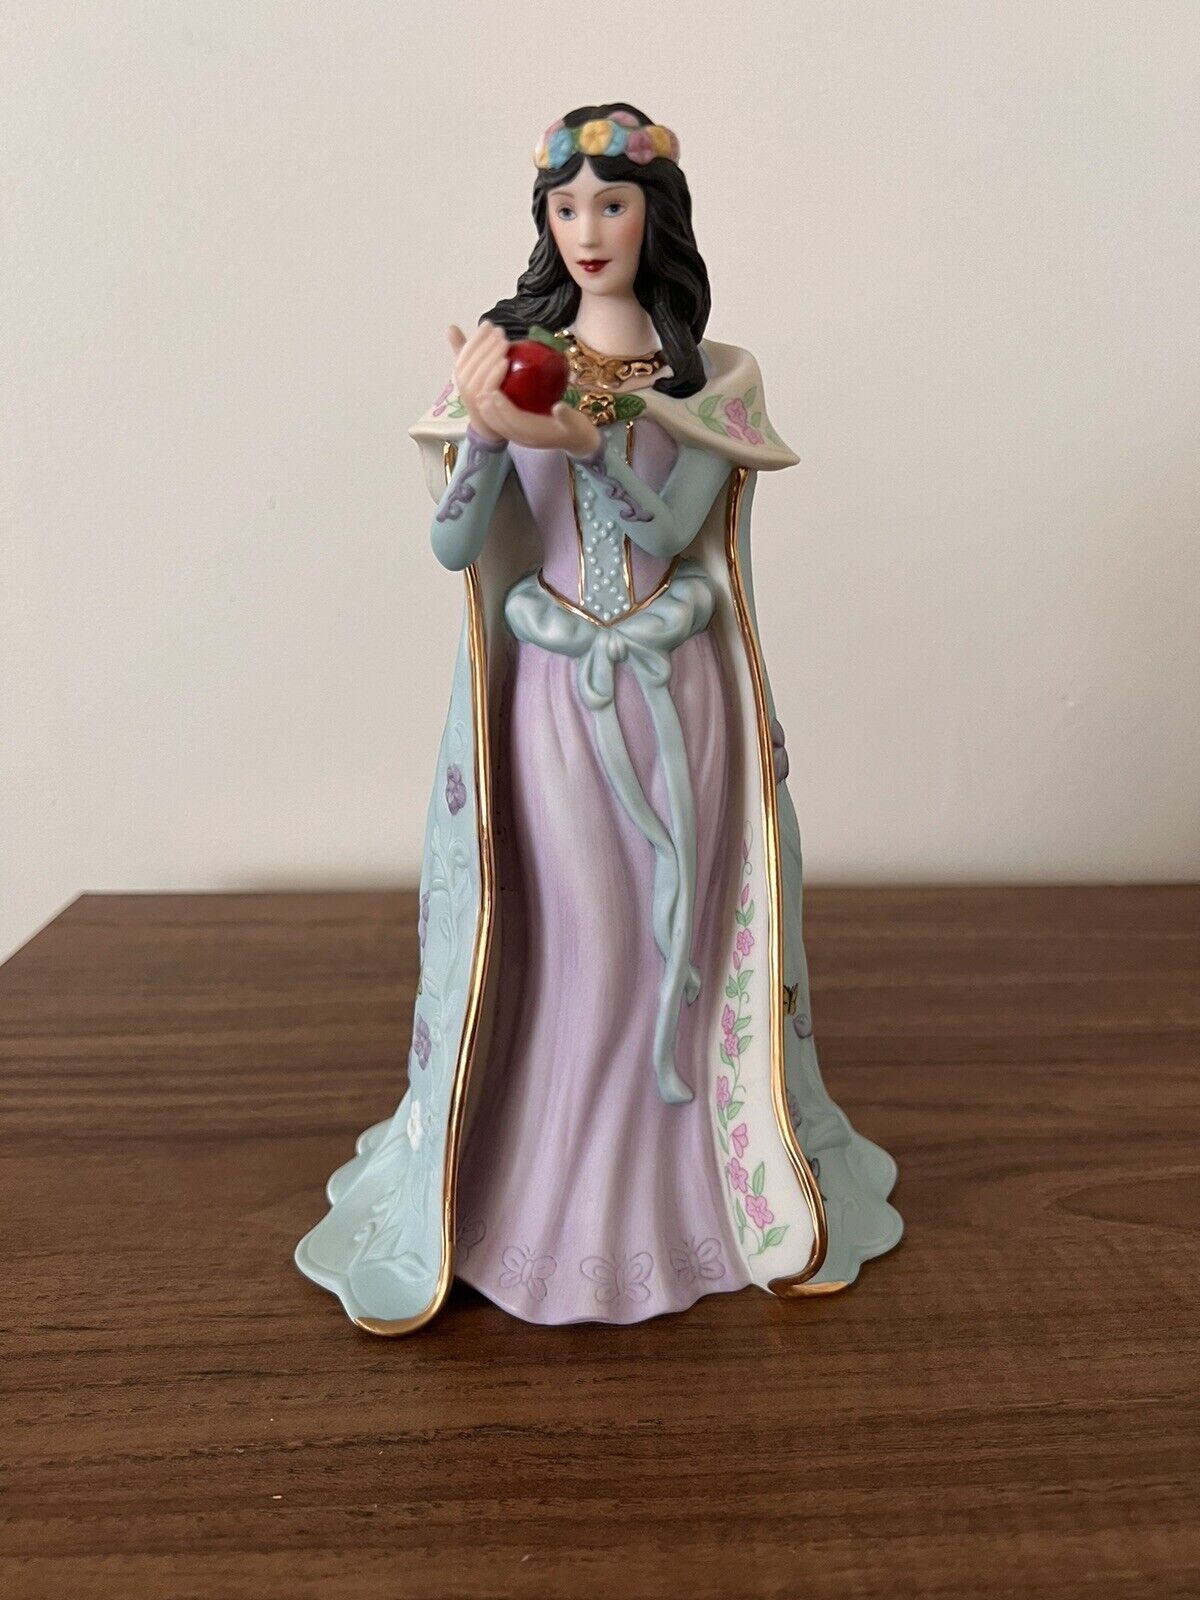 Lenox Legendary Princess Collection Snow White Porcelain Figurine MINT